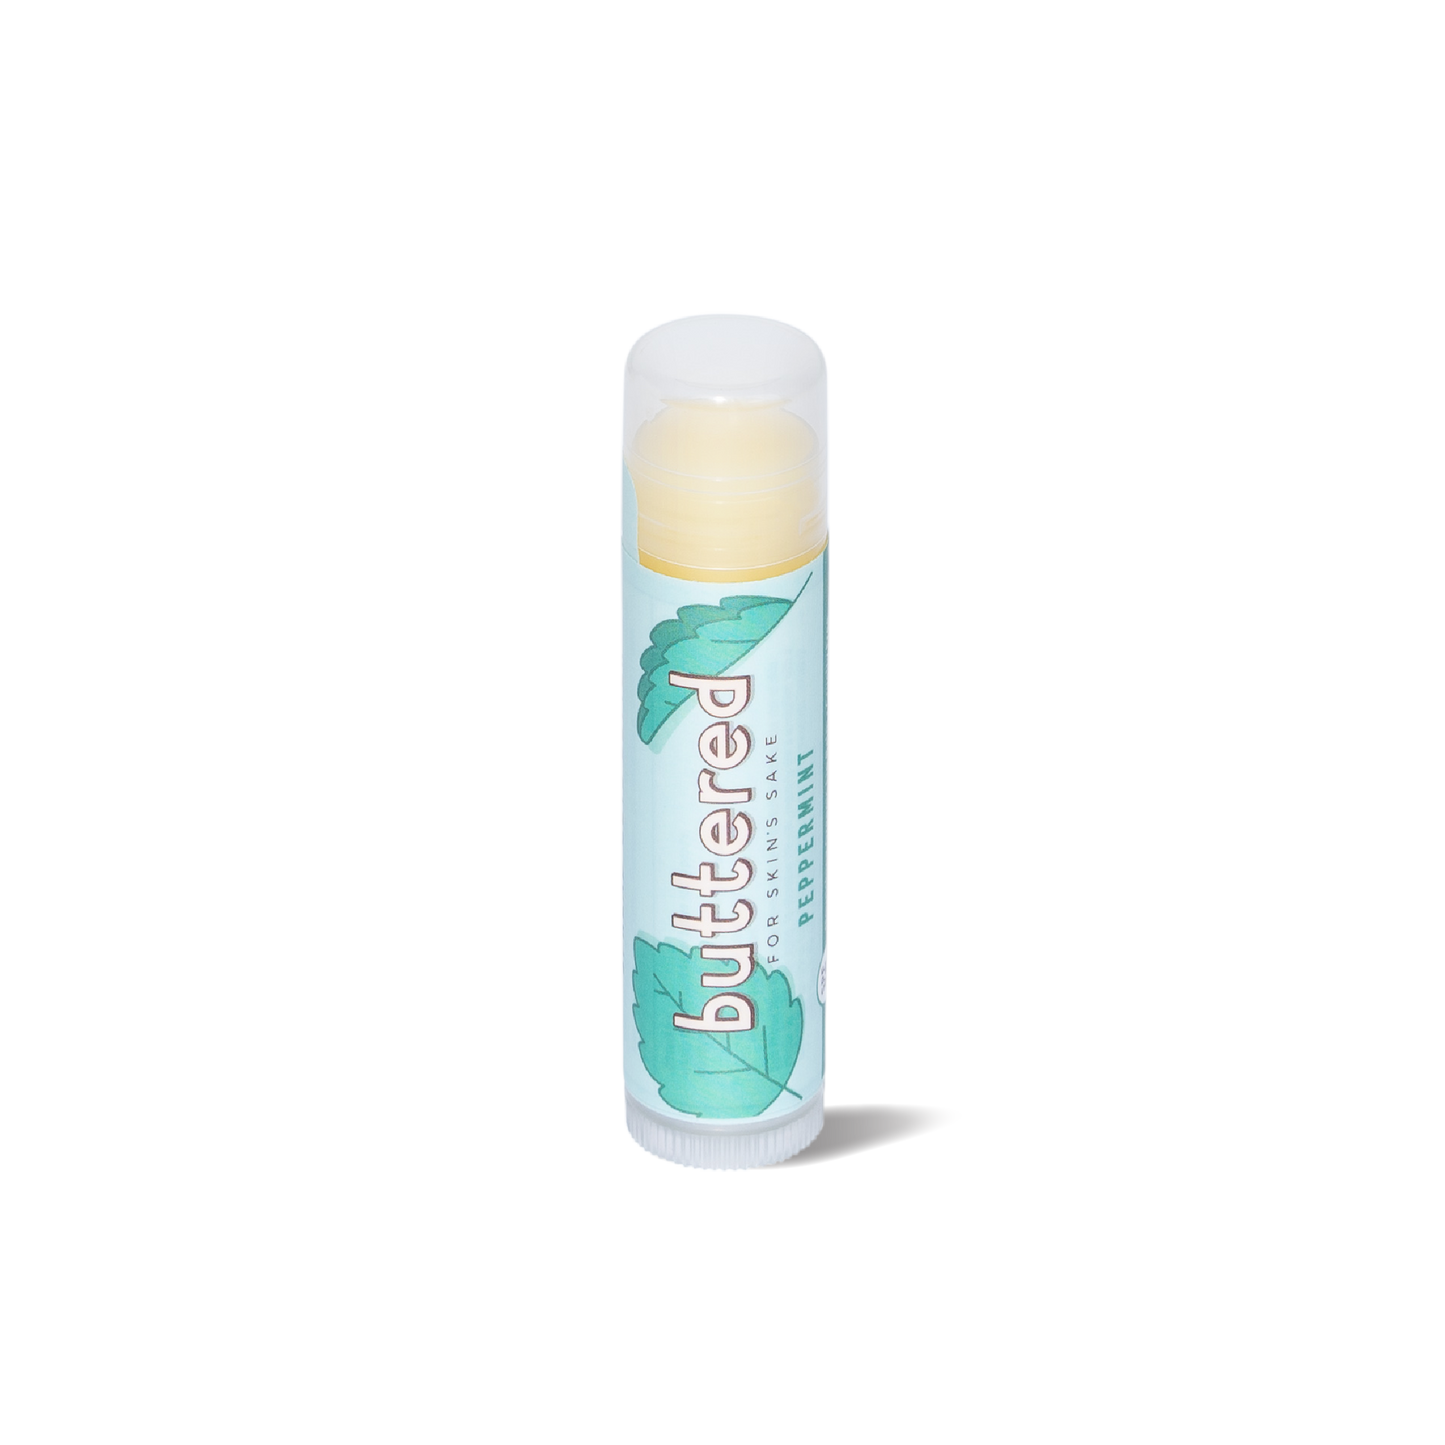 Buttered - Peppermint Lip Balm SPF 15